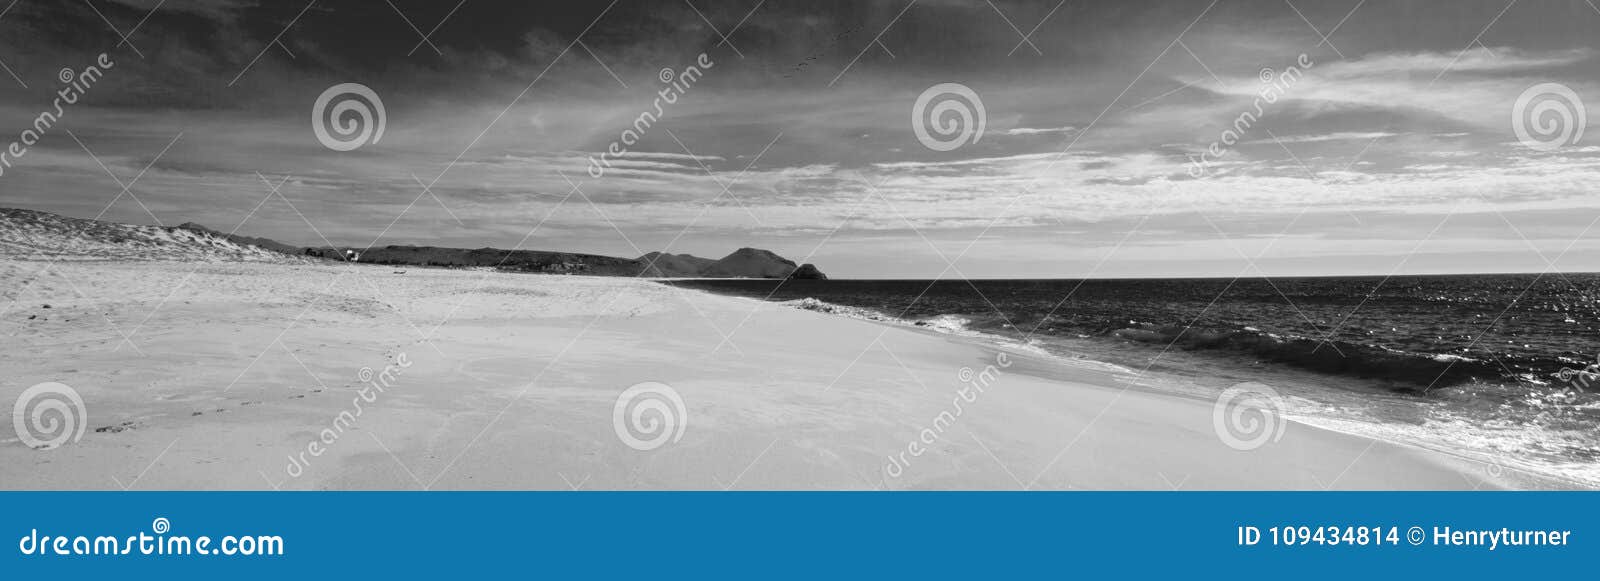 beach at todos santos central baja california mexico bcs - black and white